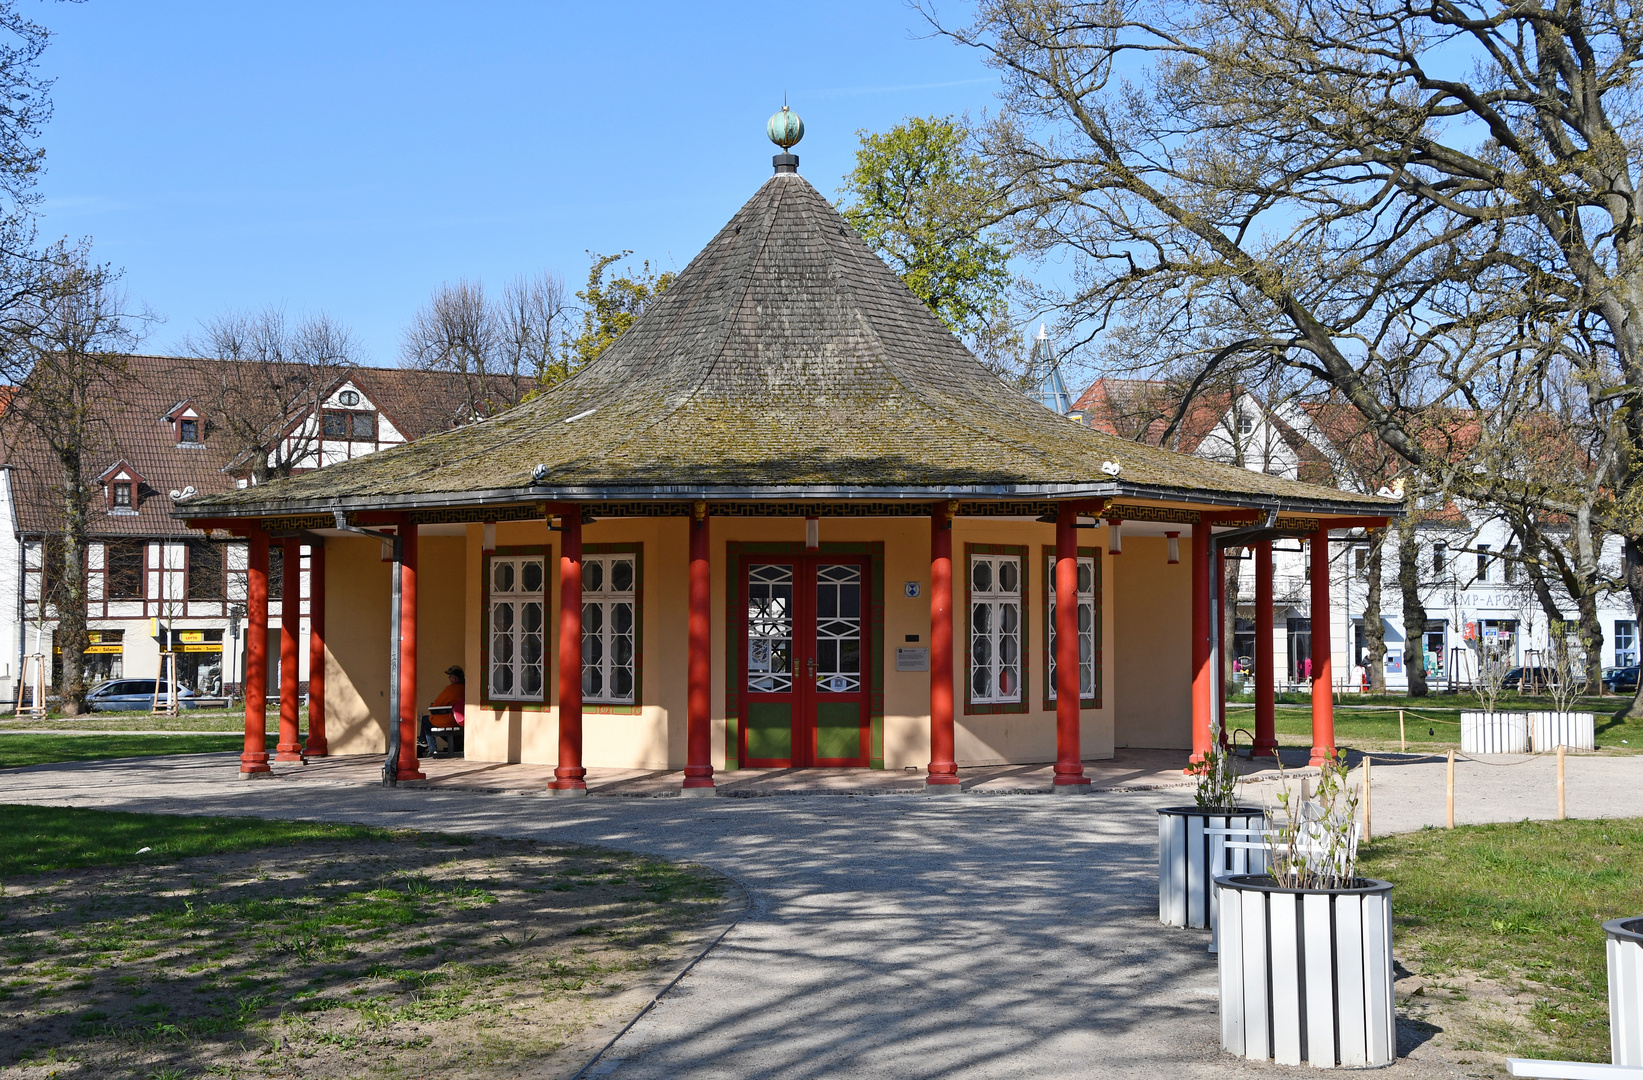 Der Rote Pavillon im Kamp von Bad Doberan